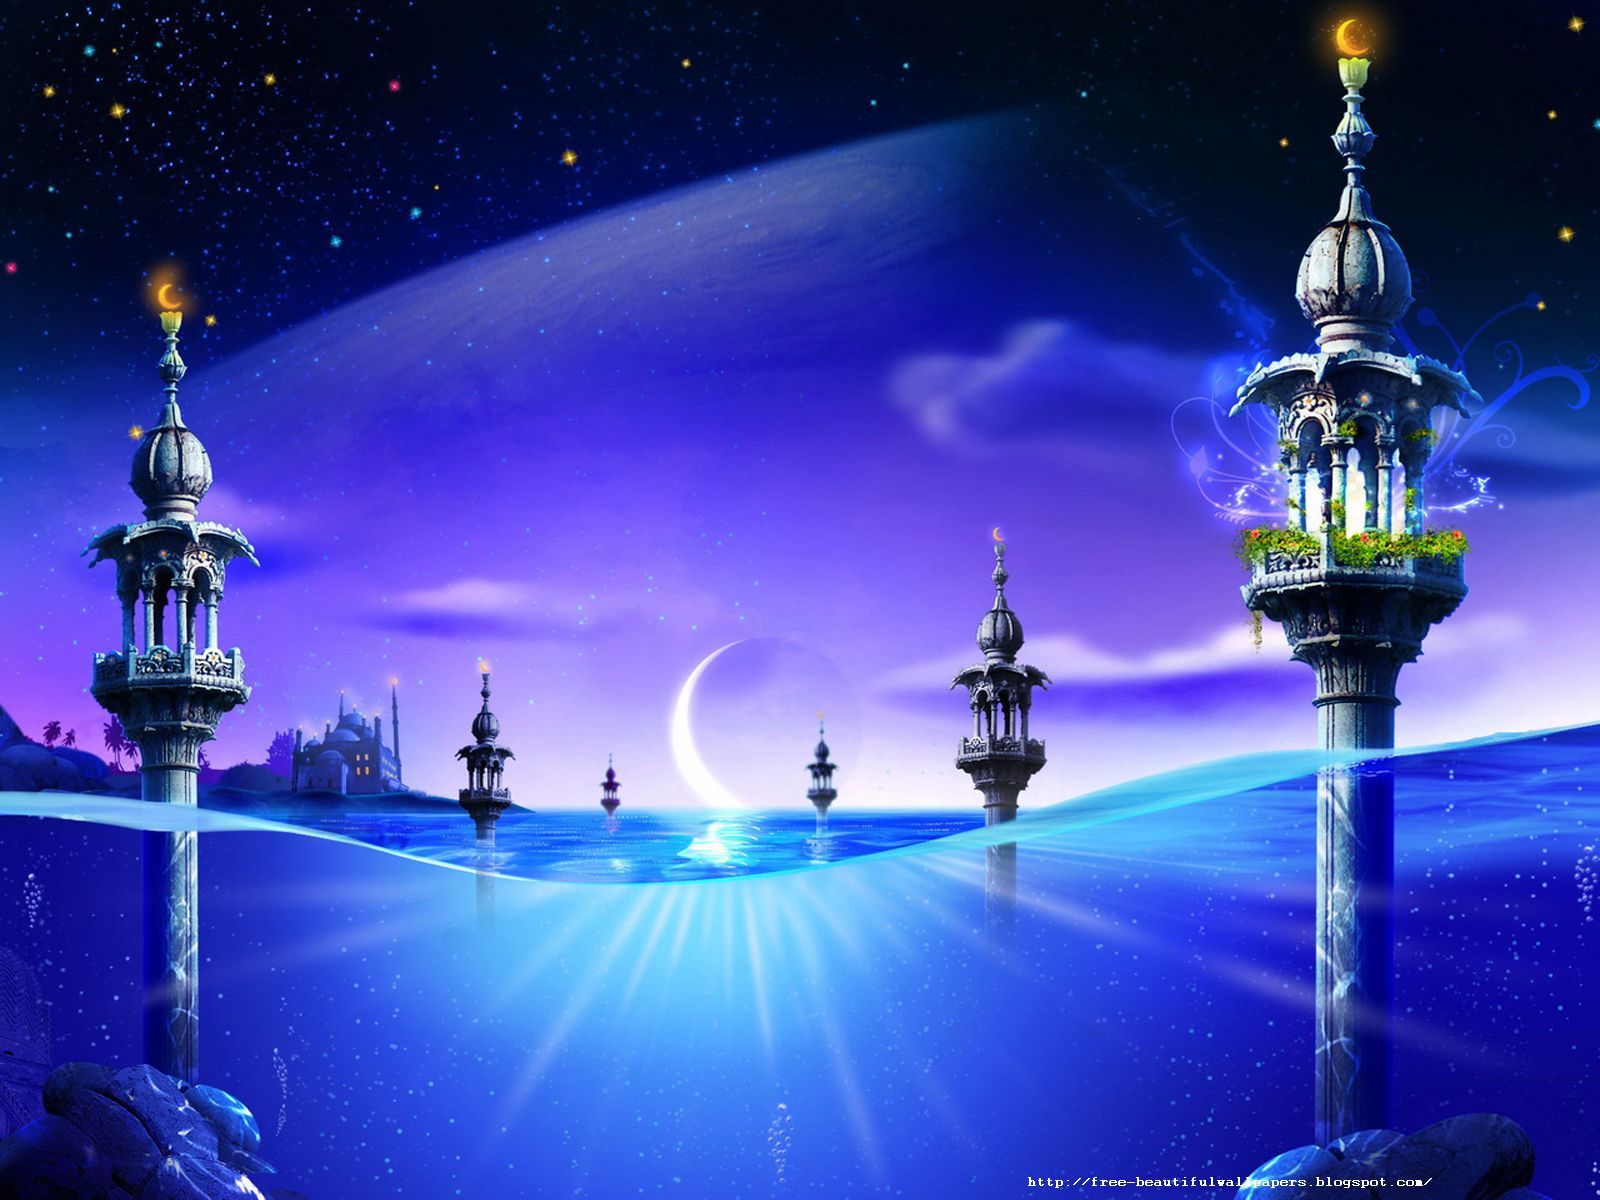 Beautiful Islamic Wallpapers Islamic High Quality Backgrounds - Nice  Islamic Background - 1600x1200 Wallpaper 